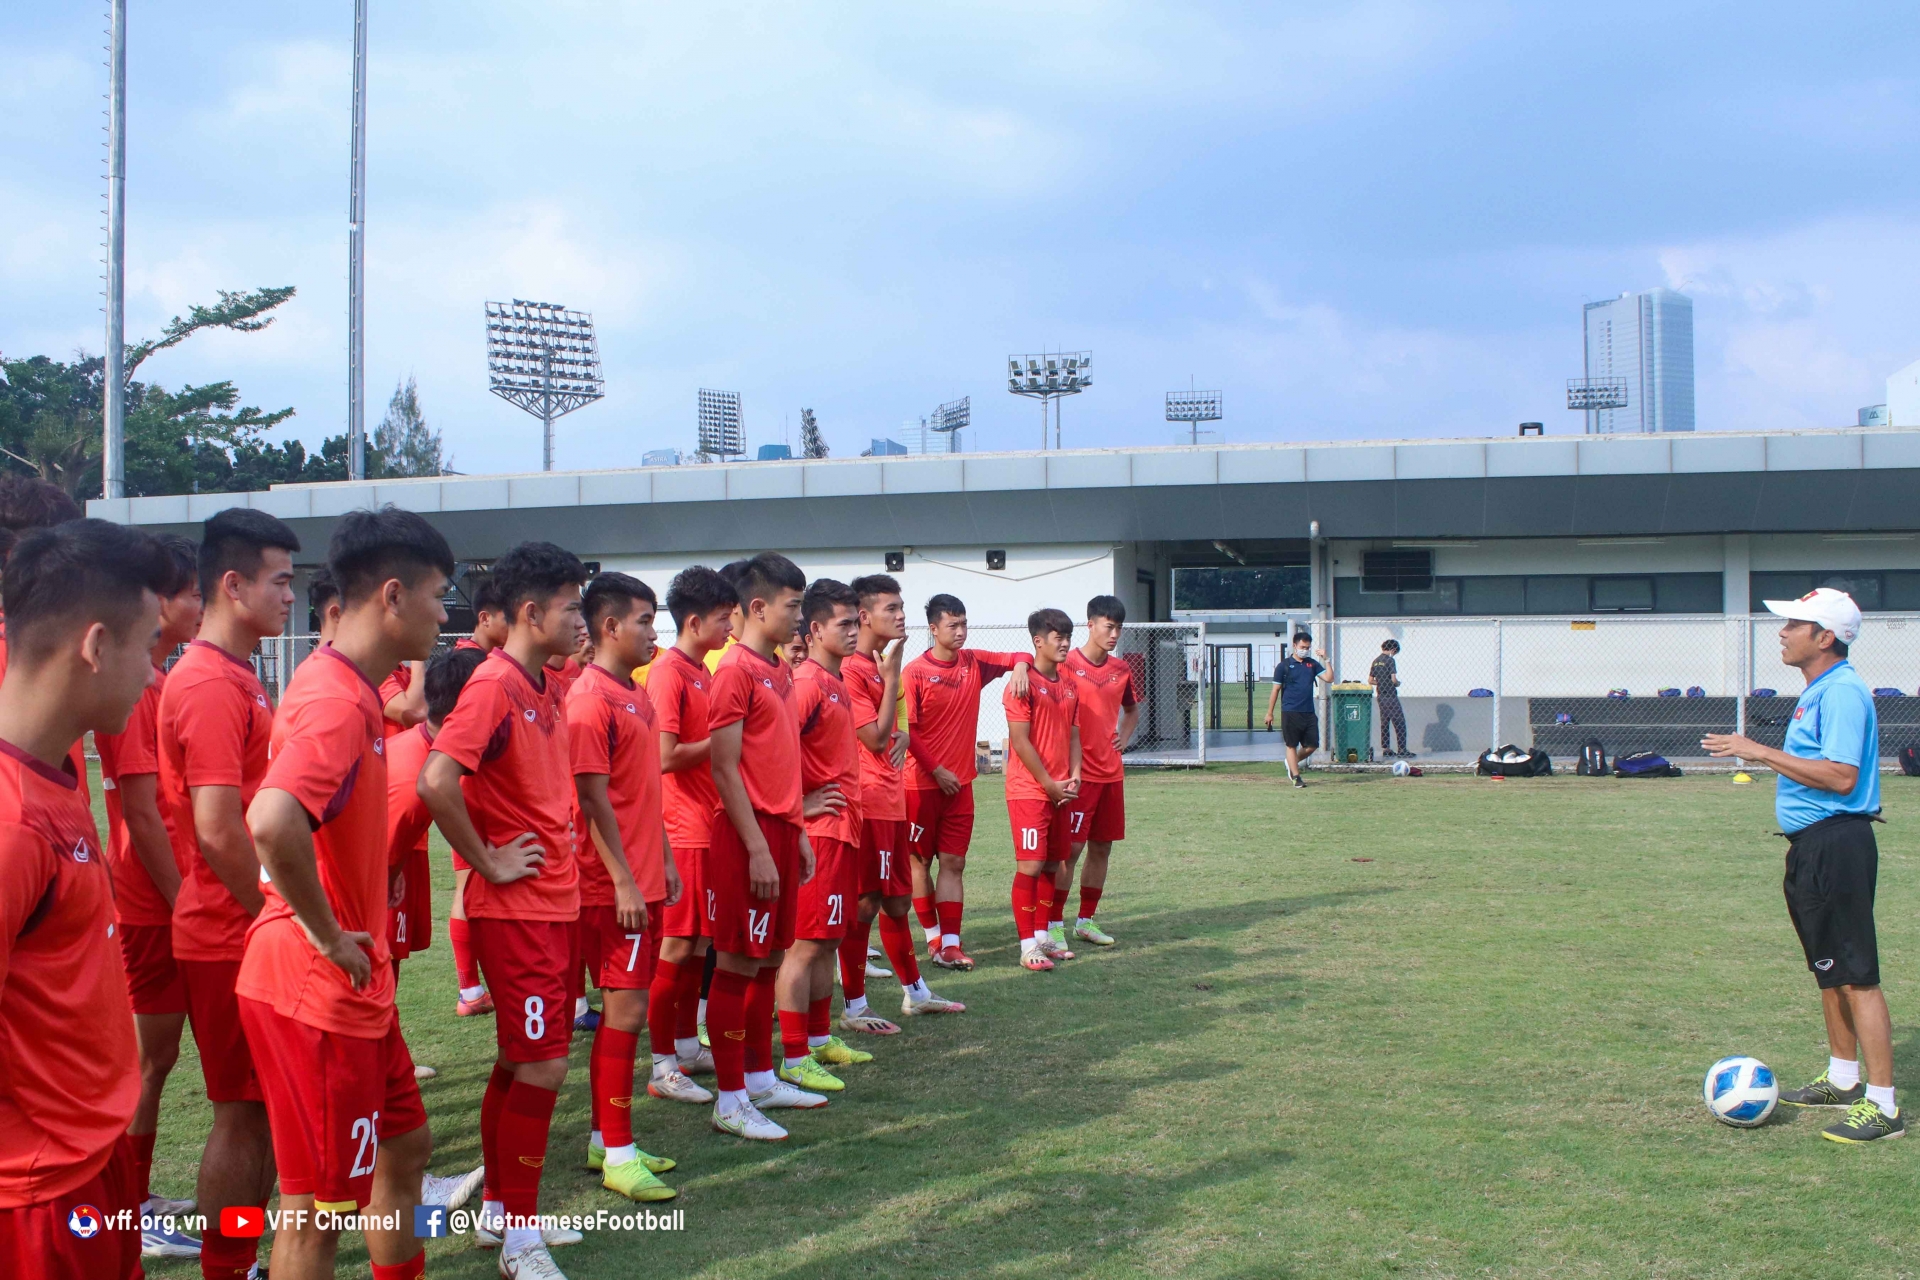 Vượt qua thất bại, U19 Việt Nam hướng đến mục tiêu mới tại giải châu Á